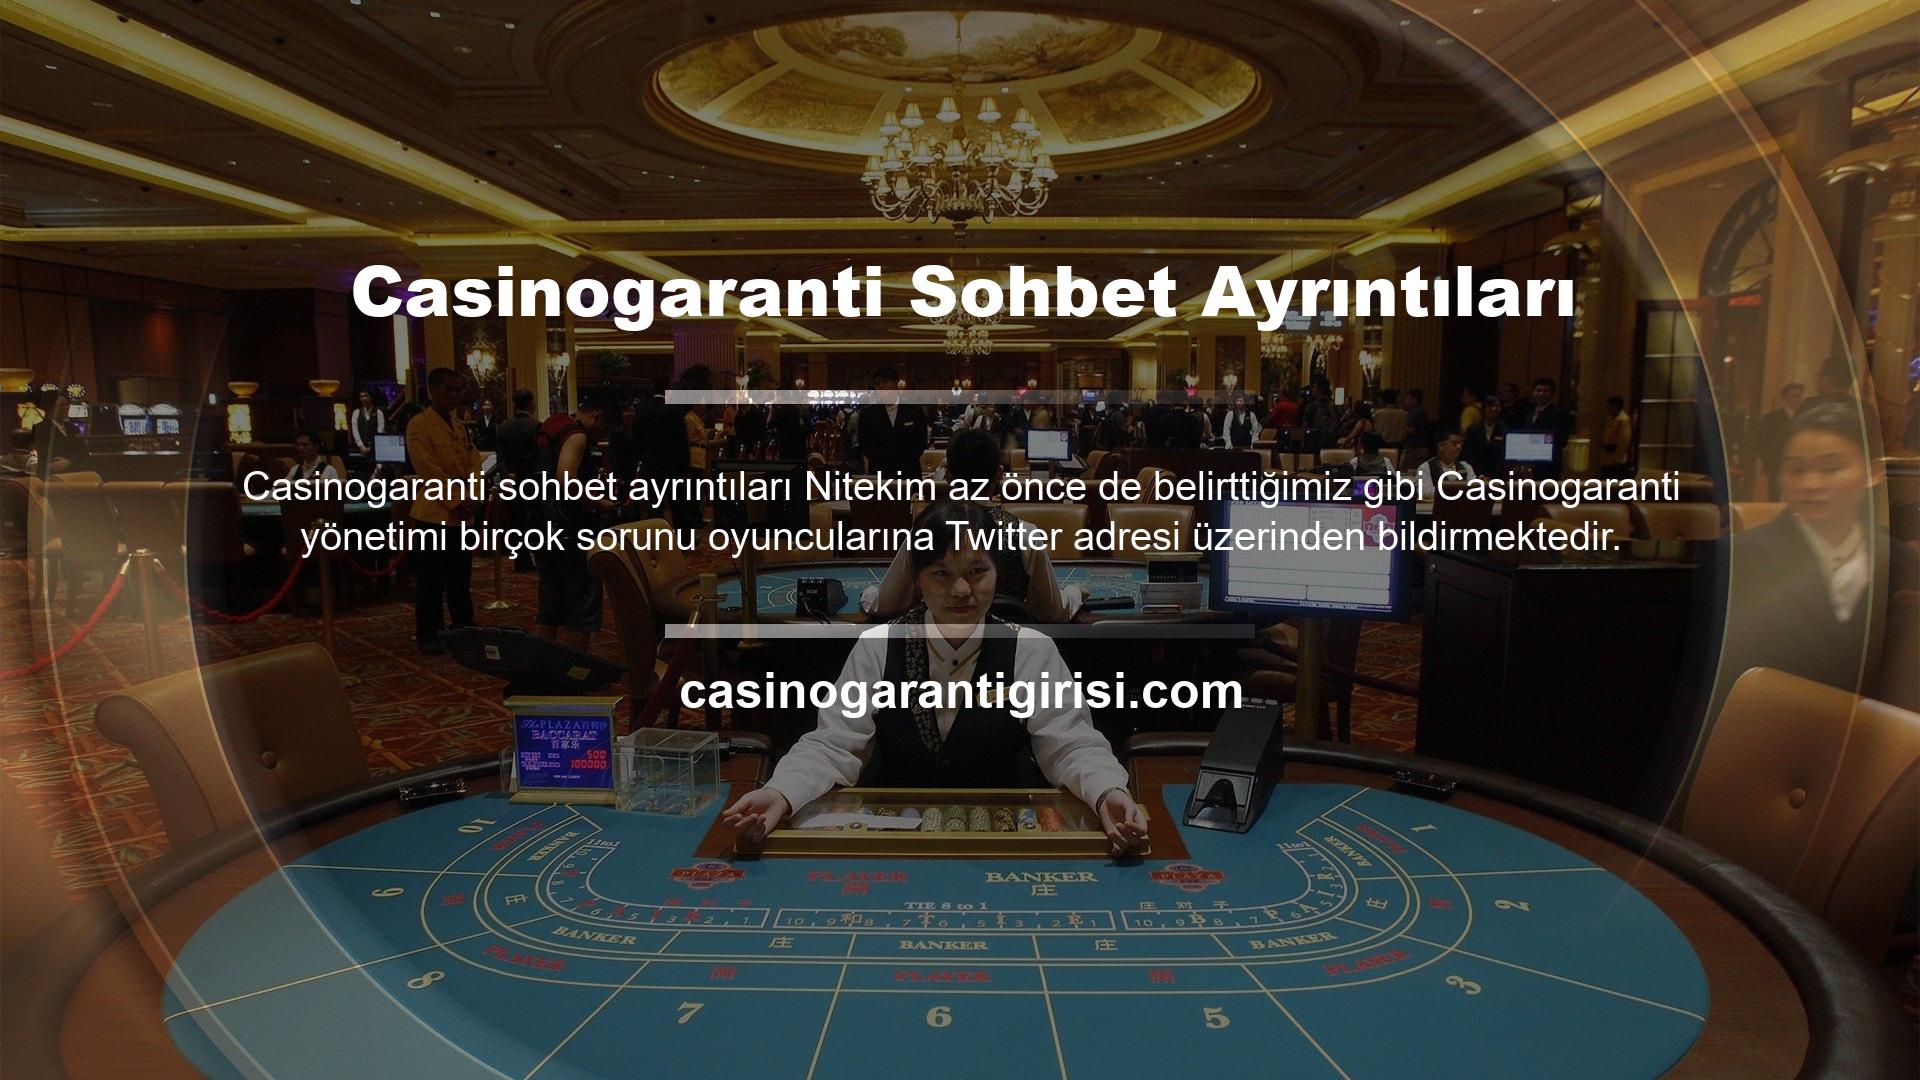 Özellikle giriş bilgileri değiştiğinde üyeler sosyal medya hesaplarında gezinerek Casinogaranti hangi adrese gittiğini kolayca görebilirler